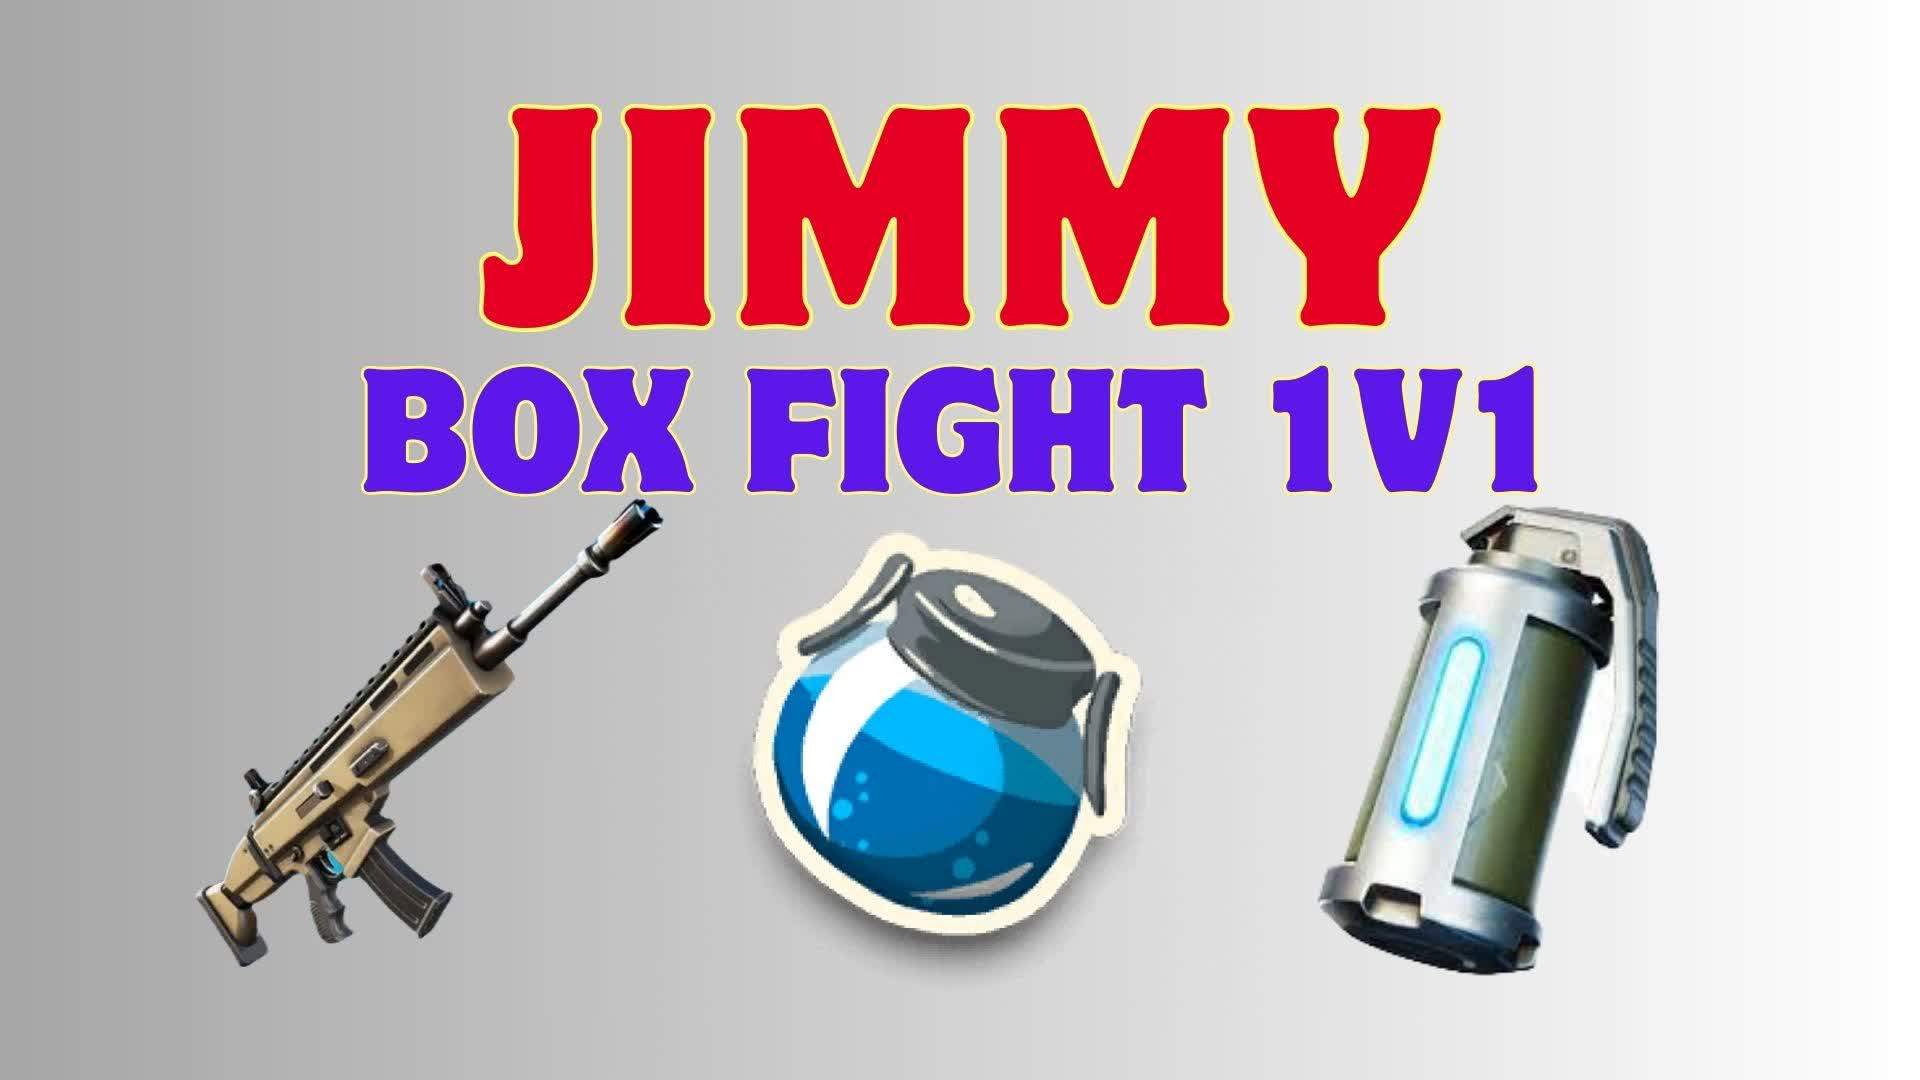 JIMMY Box Fight